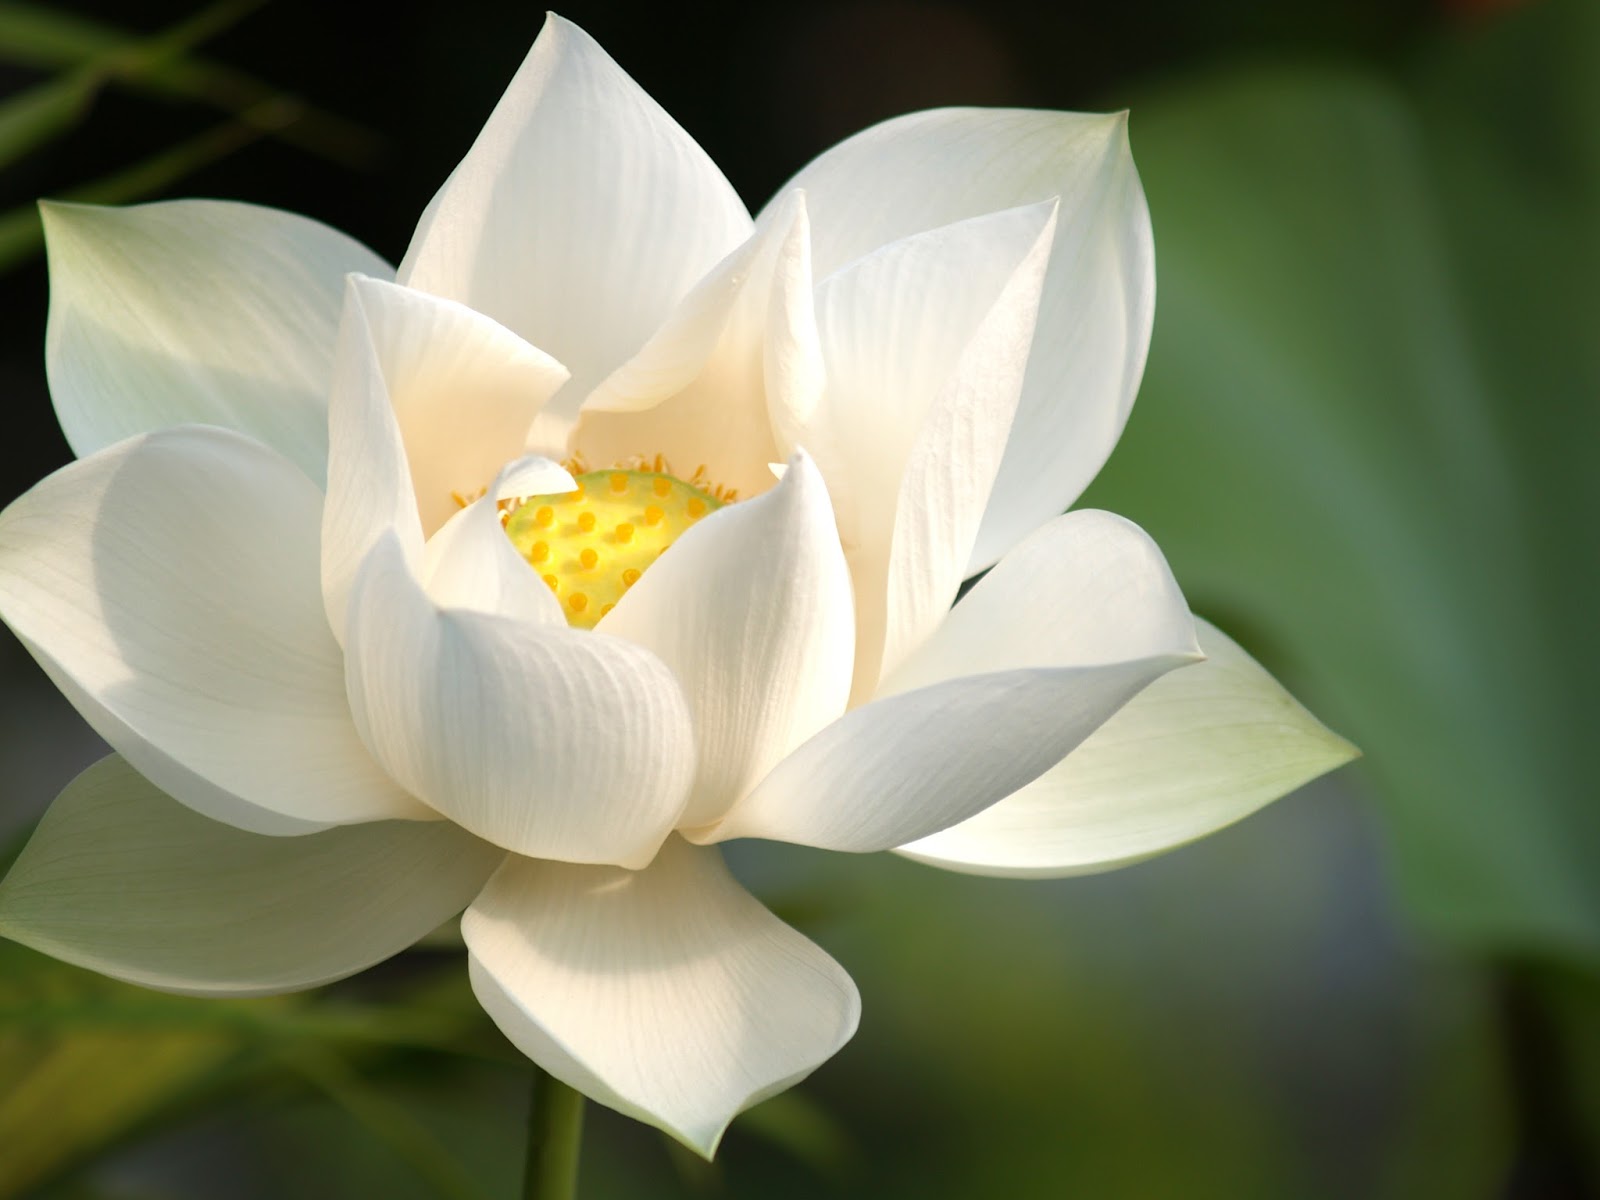 Gambar Bunga Lotus Putih  Gambar Ngetrend dan VIRAL